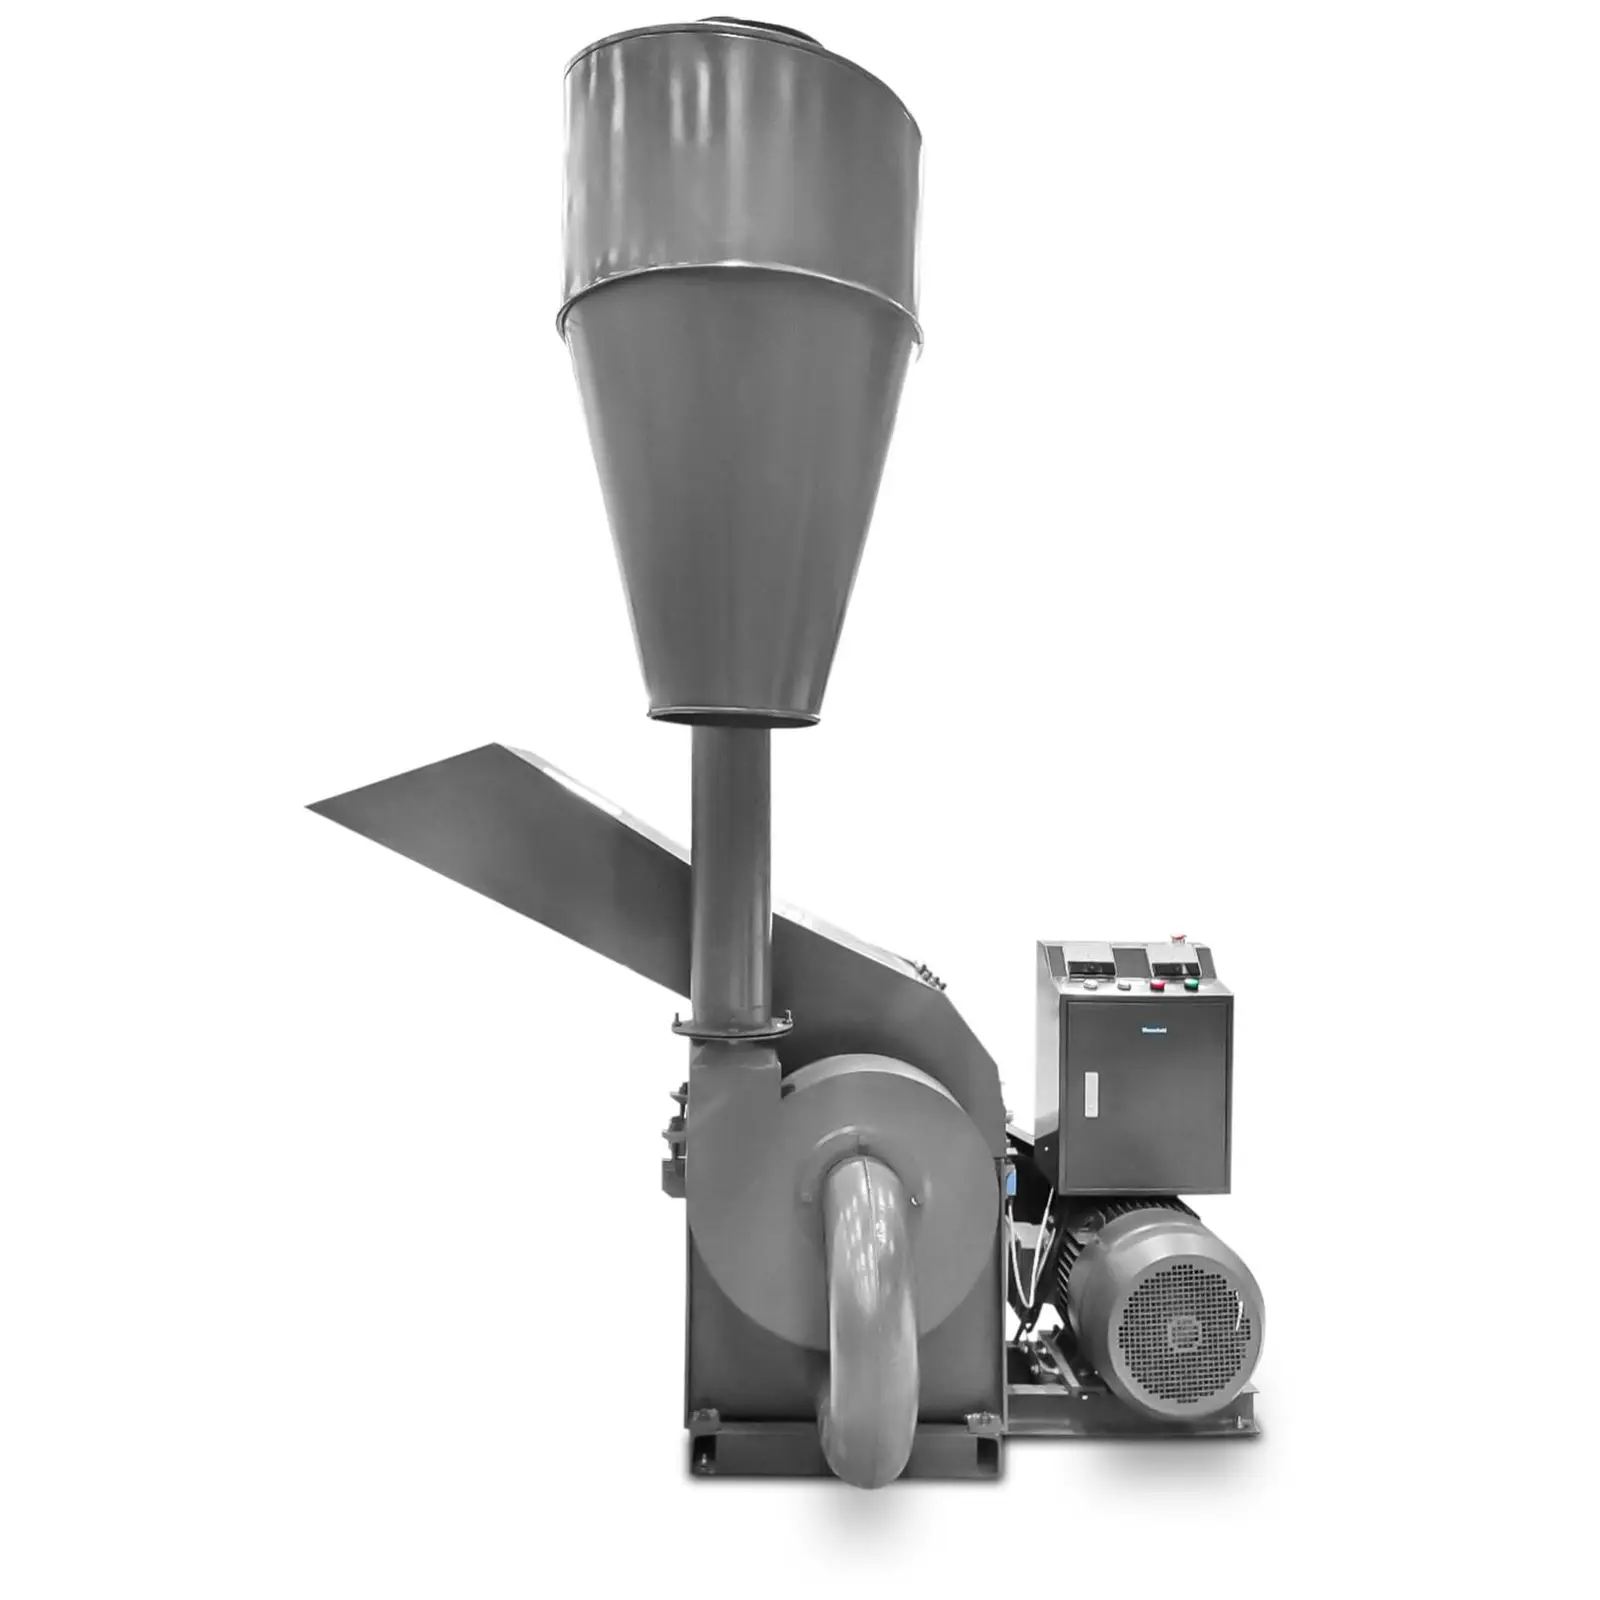 Kladivni mlin - 22 kW - 800 - 1800 kg/h